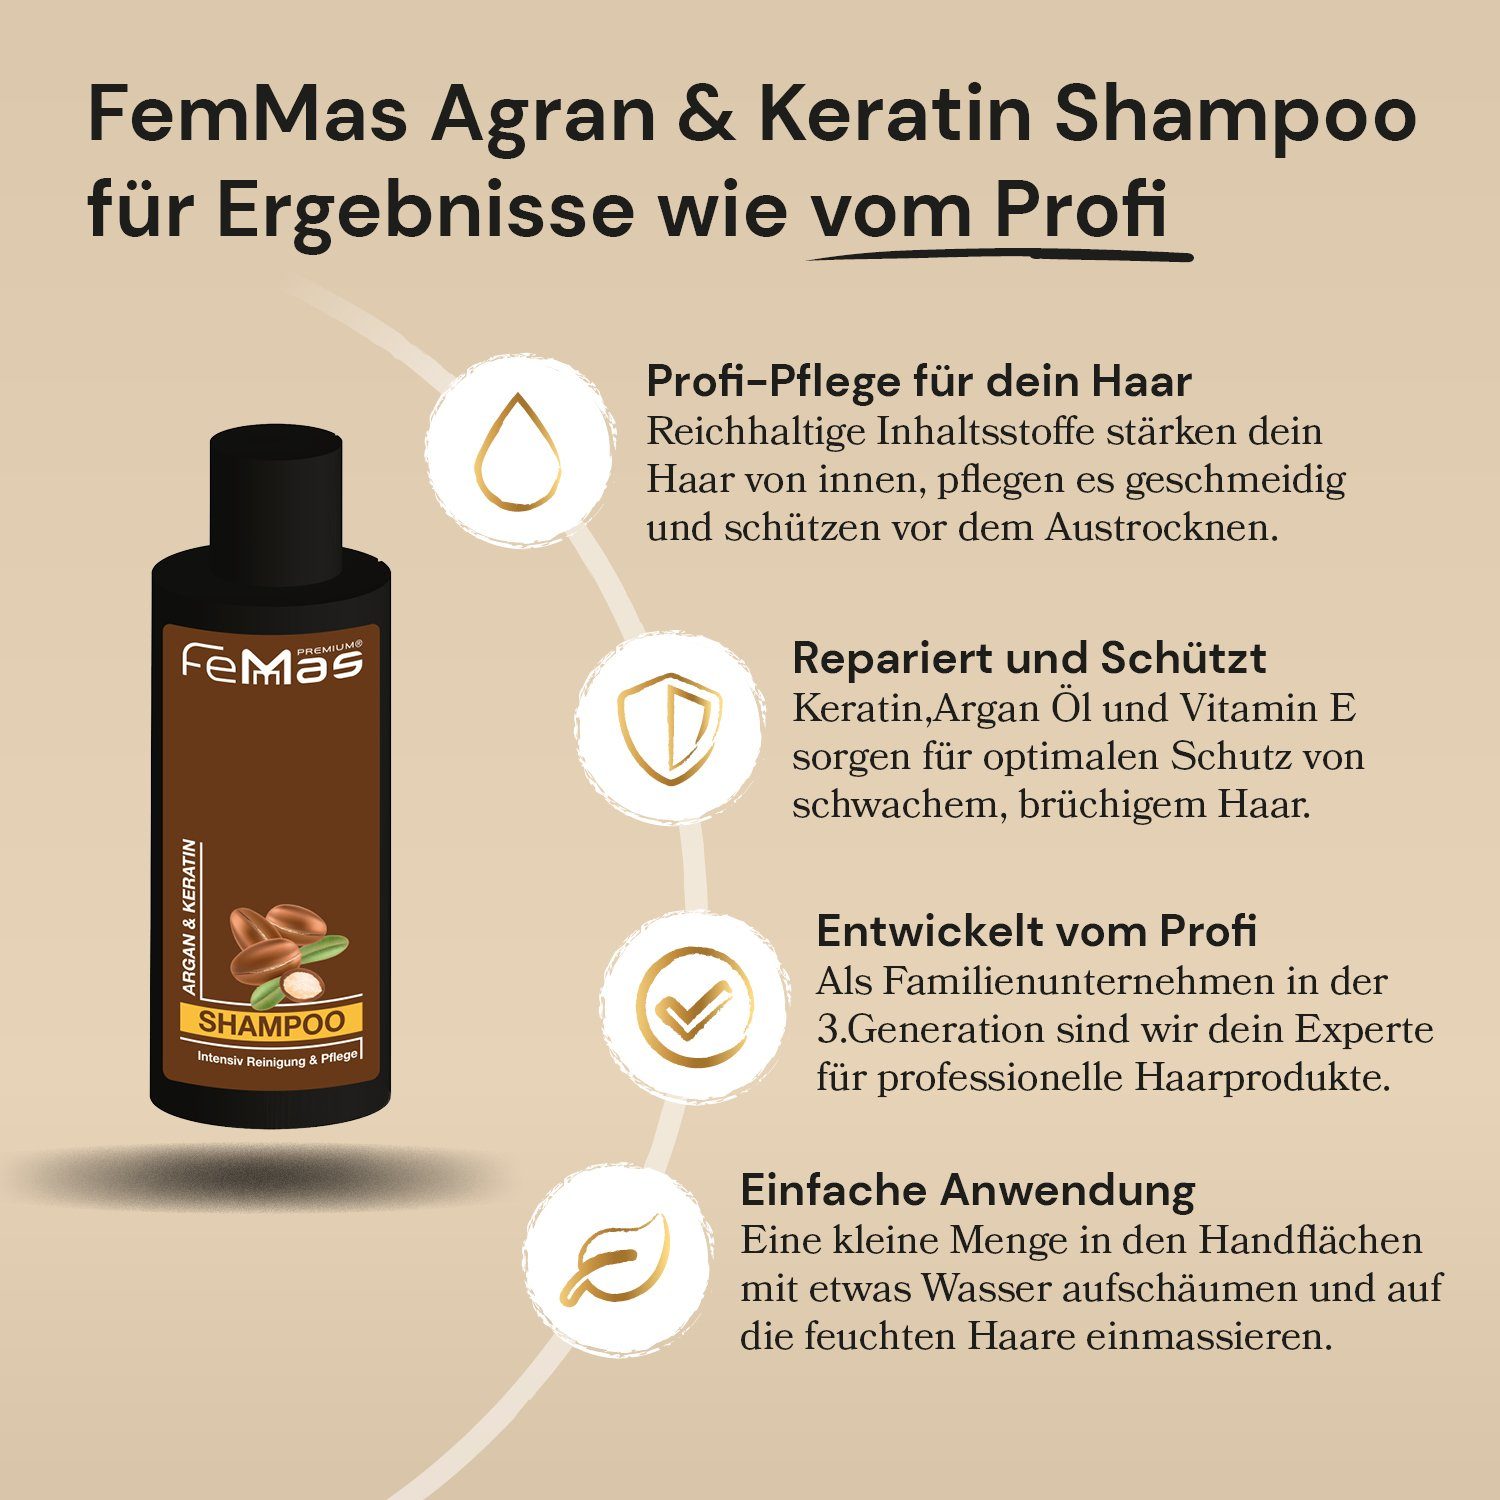 Shampoo Premium Keratin Argan & 300ml Haarshampoo Femmas FemMas